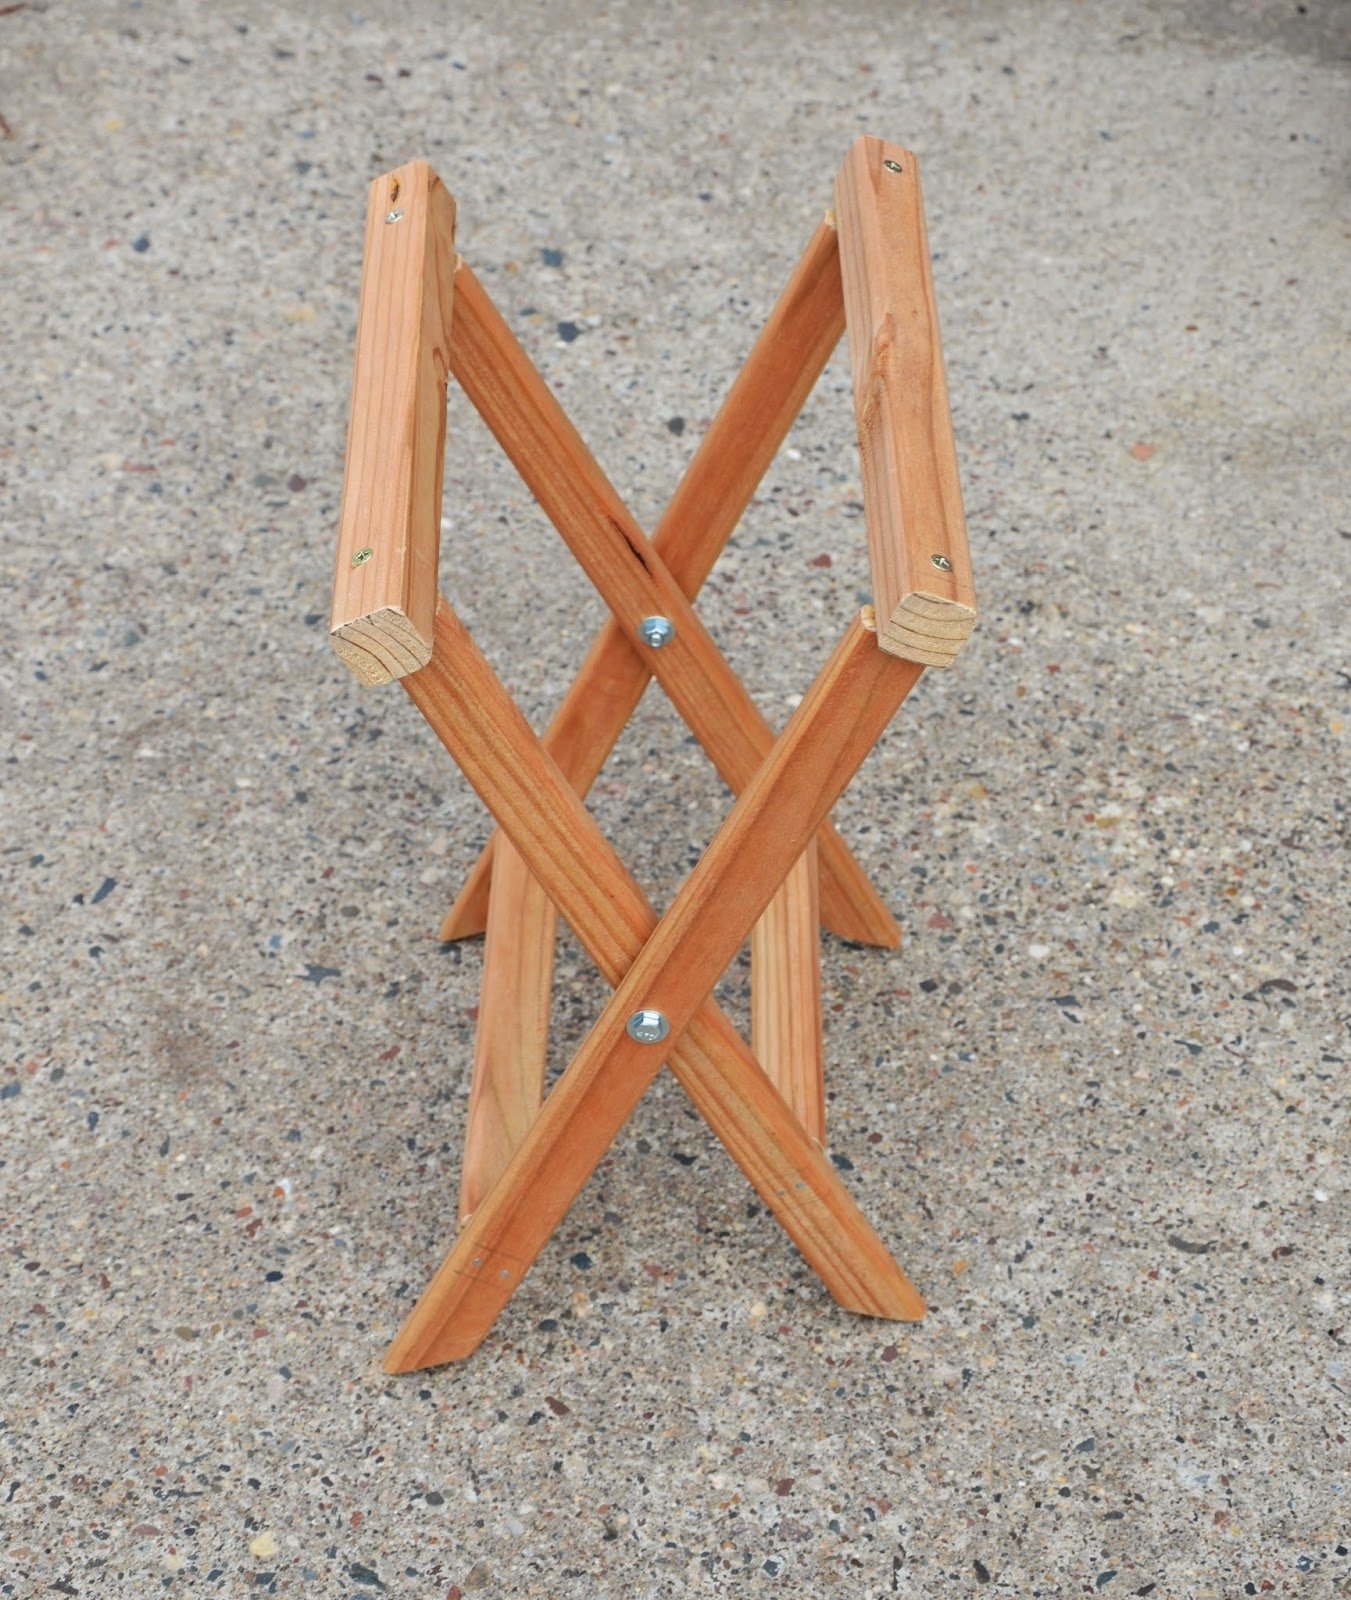 Раскладной стульчик. Самодельный складной табурет. Складной стульчик из дерева. Самодельный раскладной стул. Складные стулья из дерева своими руками